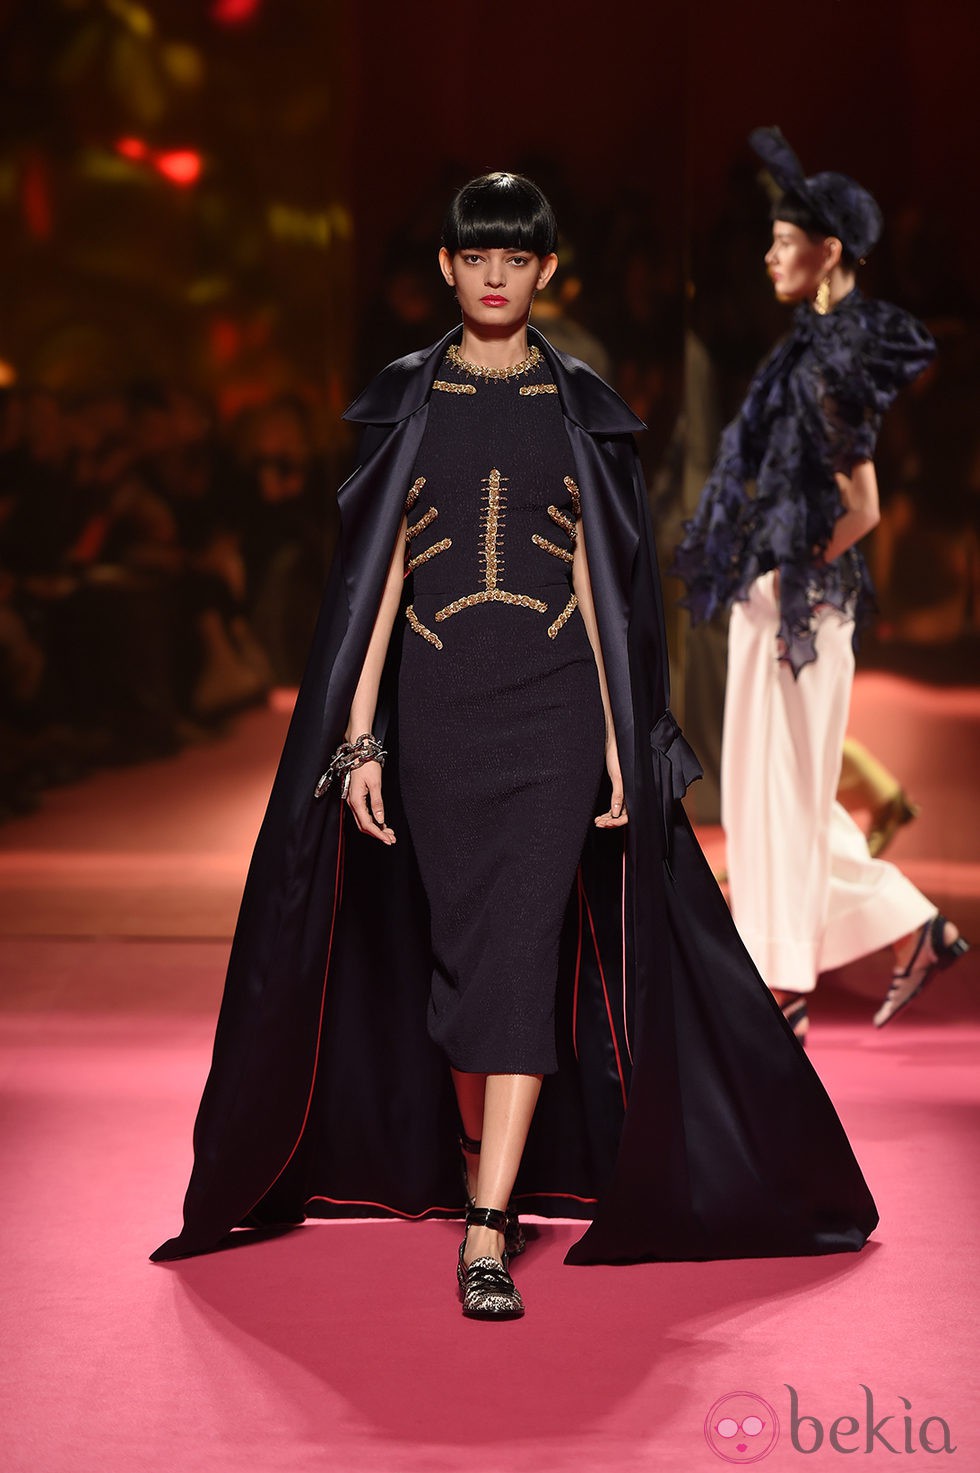 Vestido negro de Schiaparelli en la Semana de la Alta Costura de París primavera/verano 2015